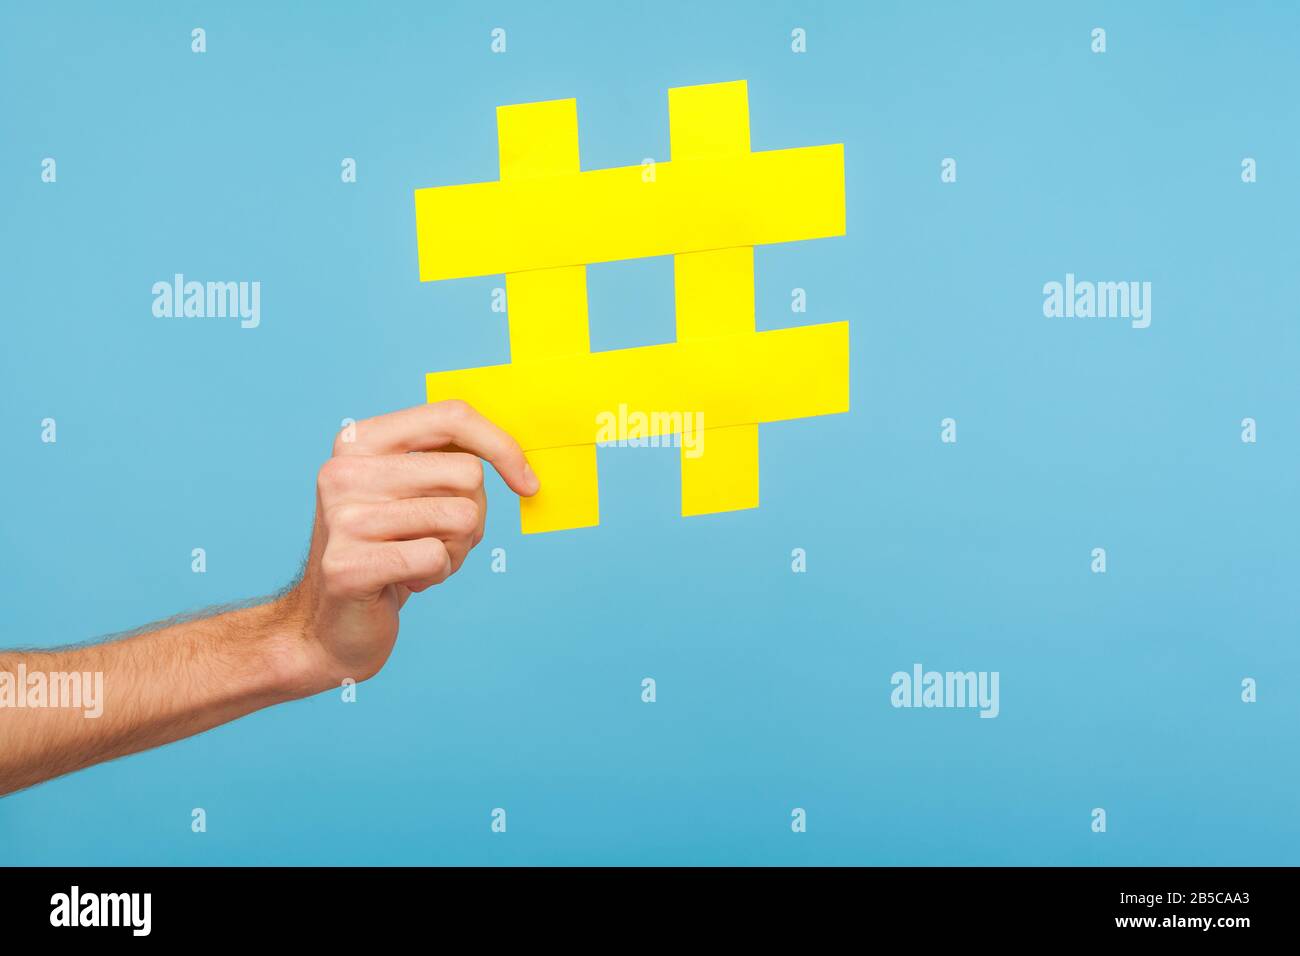 Nahaufnahme der männlichen Hand mit großem gelben Hash-Zeichen, Hashtag-Symbol für Internet-Trends und beliebte Blogs, Empfehlung, Social Media-Inhalte zu folgen. Stockfoto